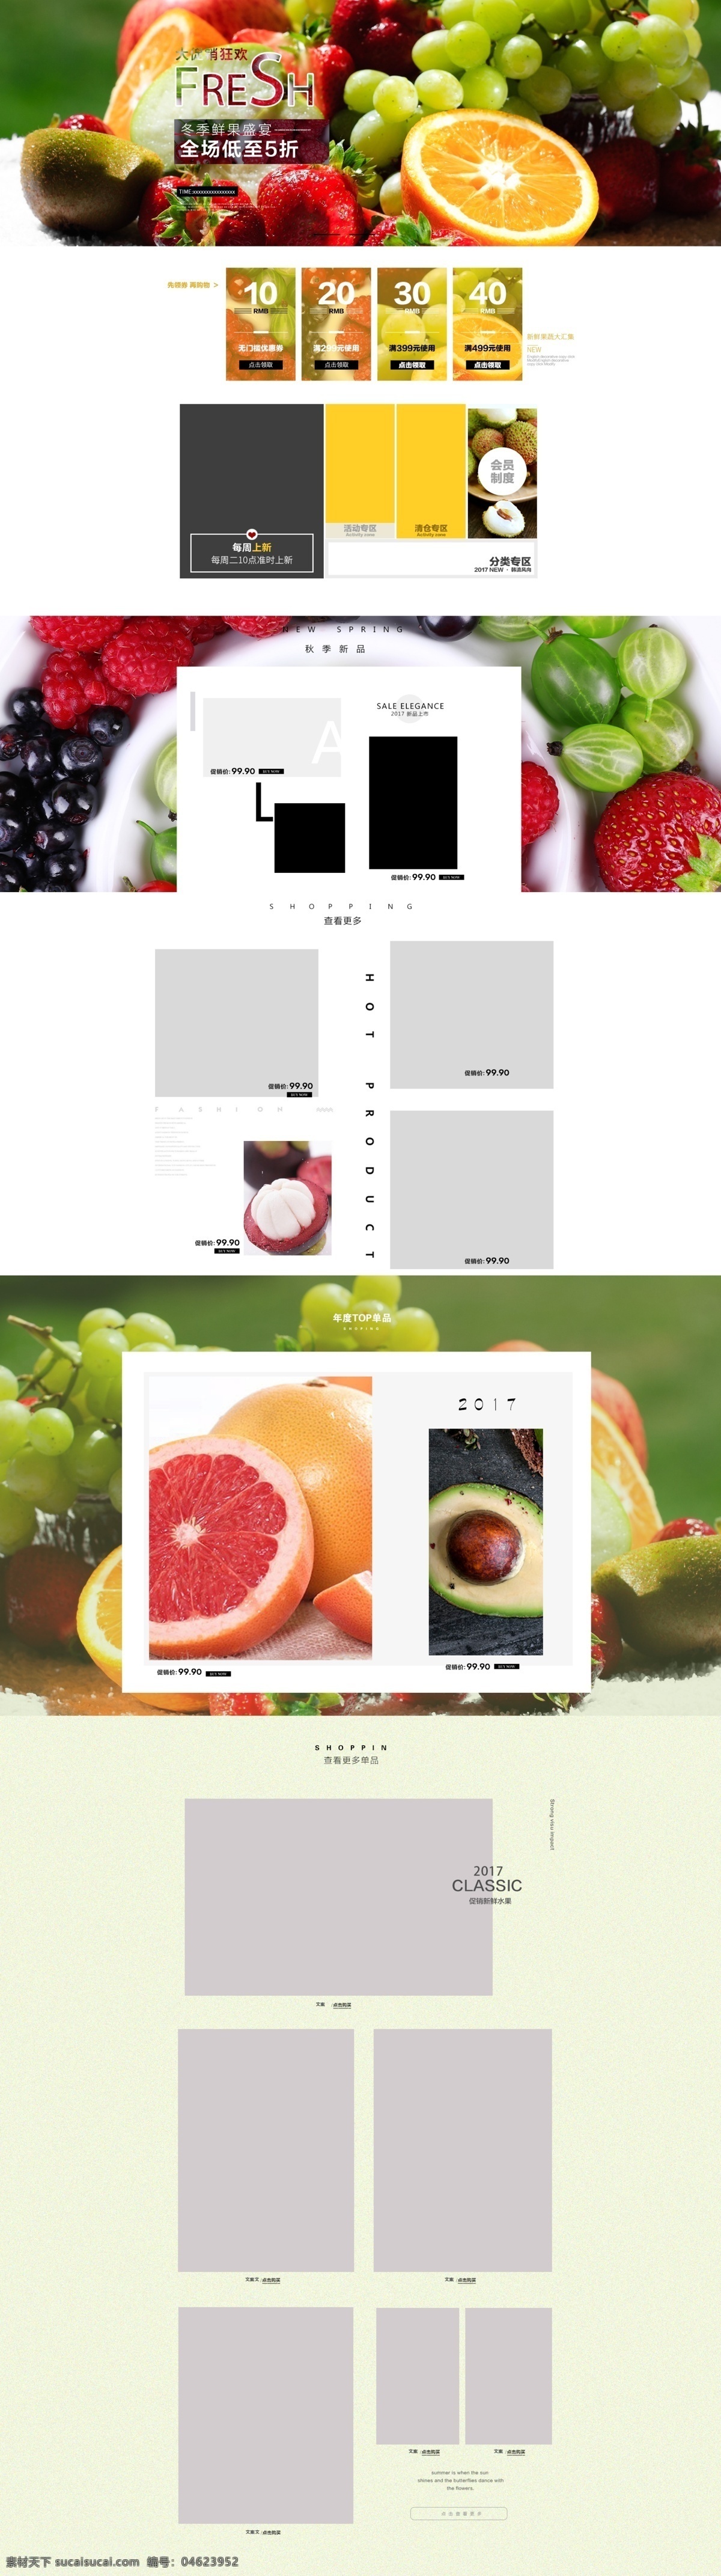 食品 首页 模板 源文件 促销 大气 全场低至5折 水果 鲜果盛宴